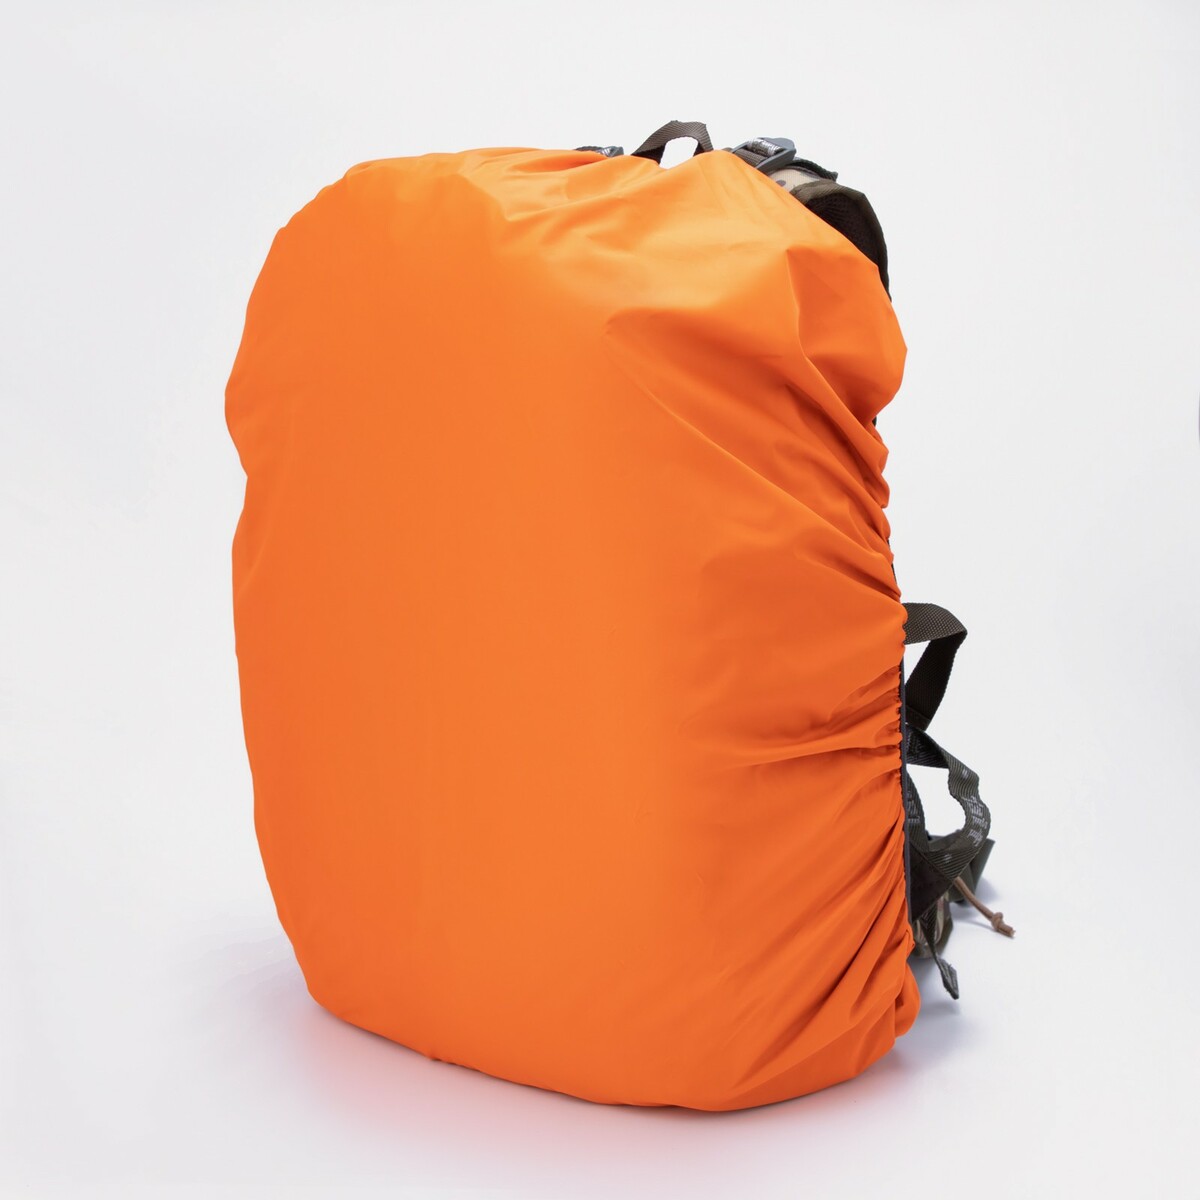 Чехол на рюкзак 60 л, цвет оранжевый чехол влагостойкий на рюкзак 10 30 литров оксфорд 210